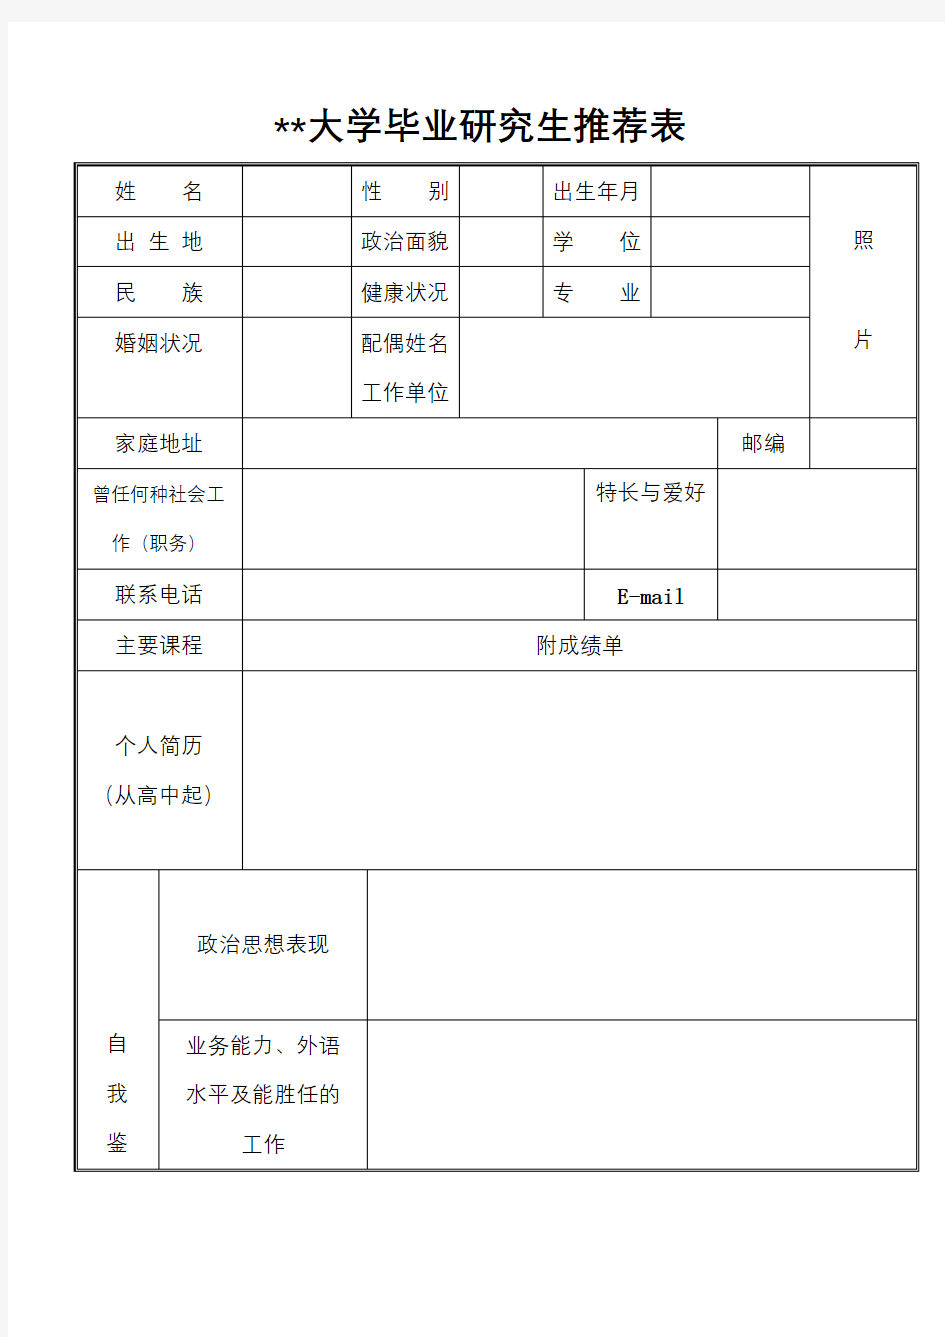 中国科学院大学毕业研究生推荐表【模板】